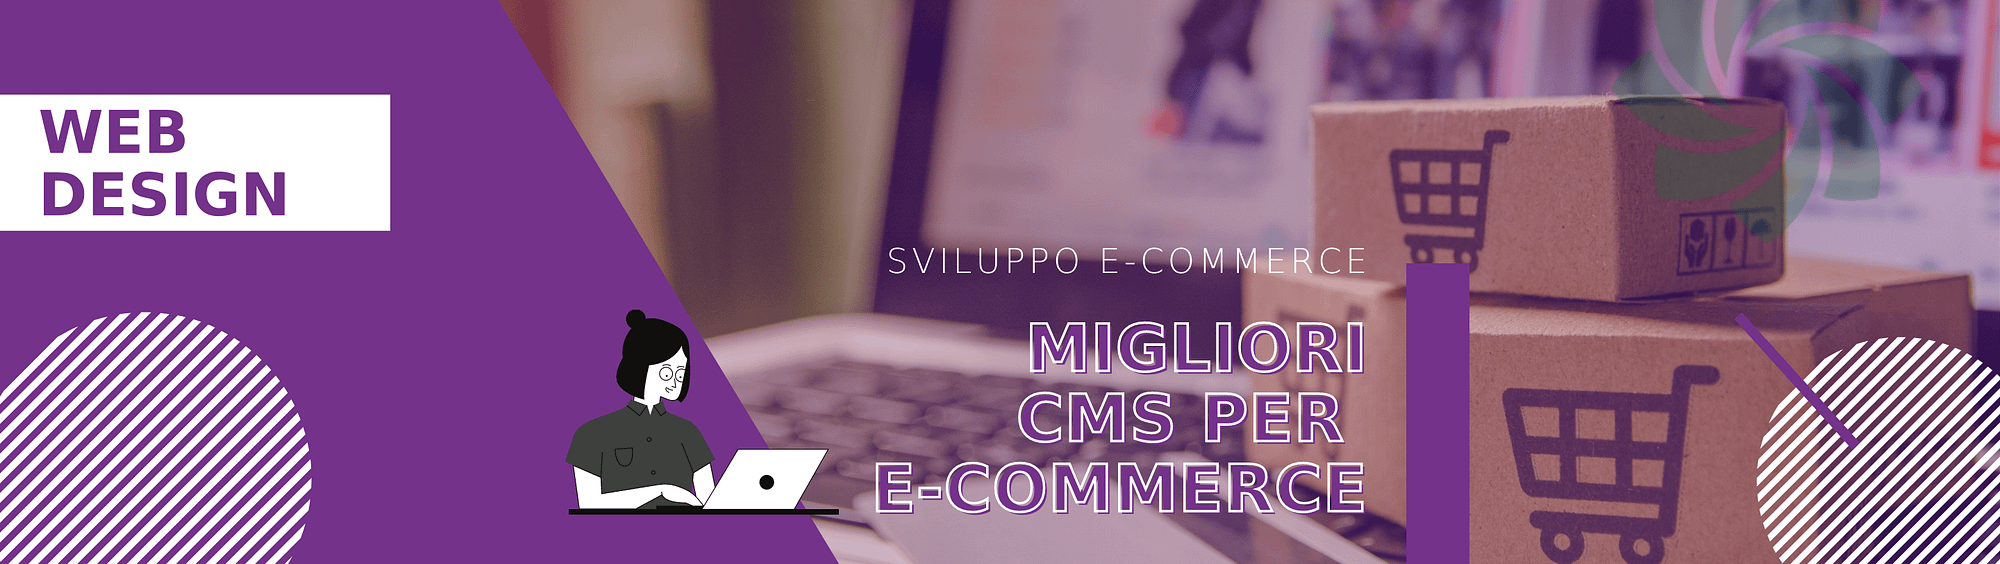 migliori-cms-e-commerce